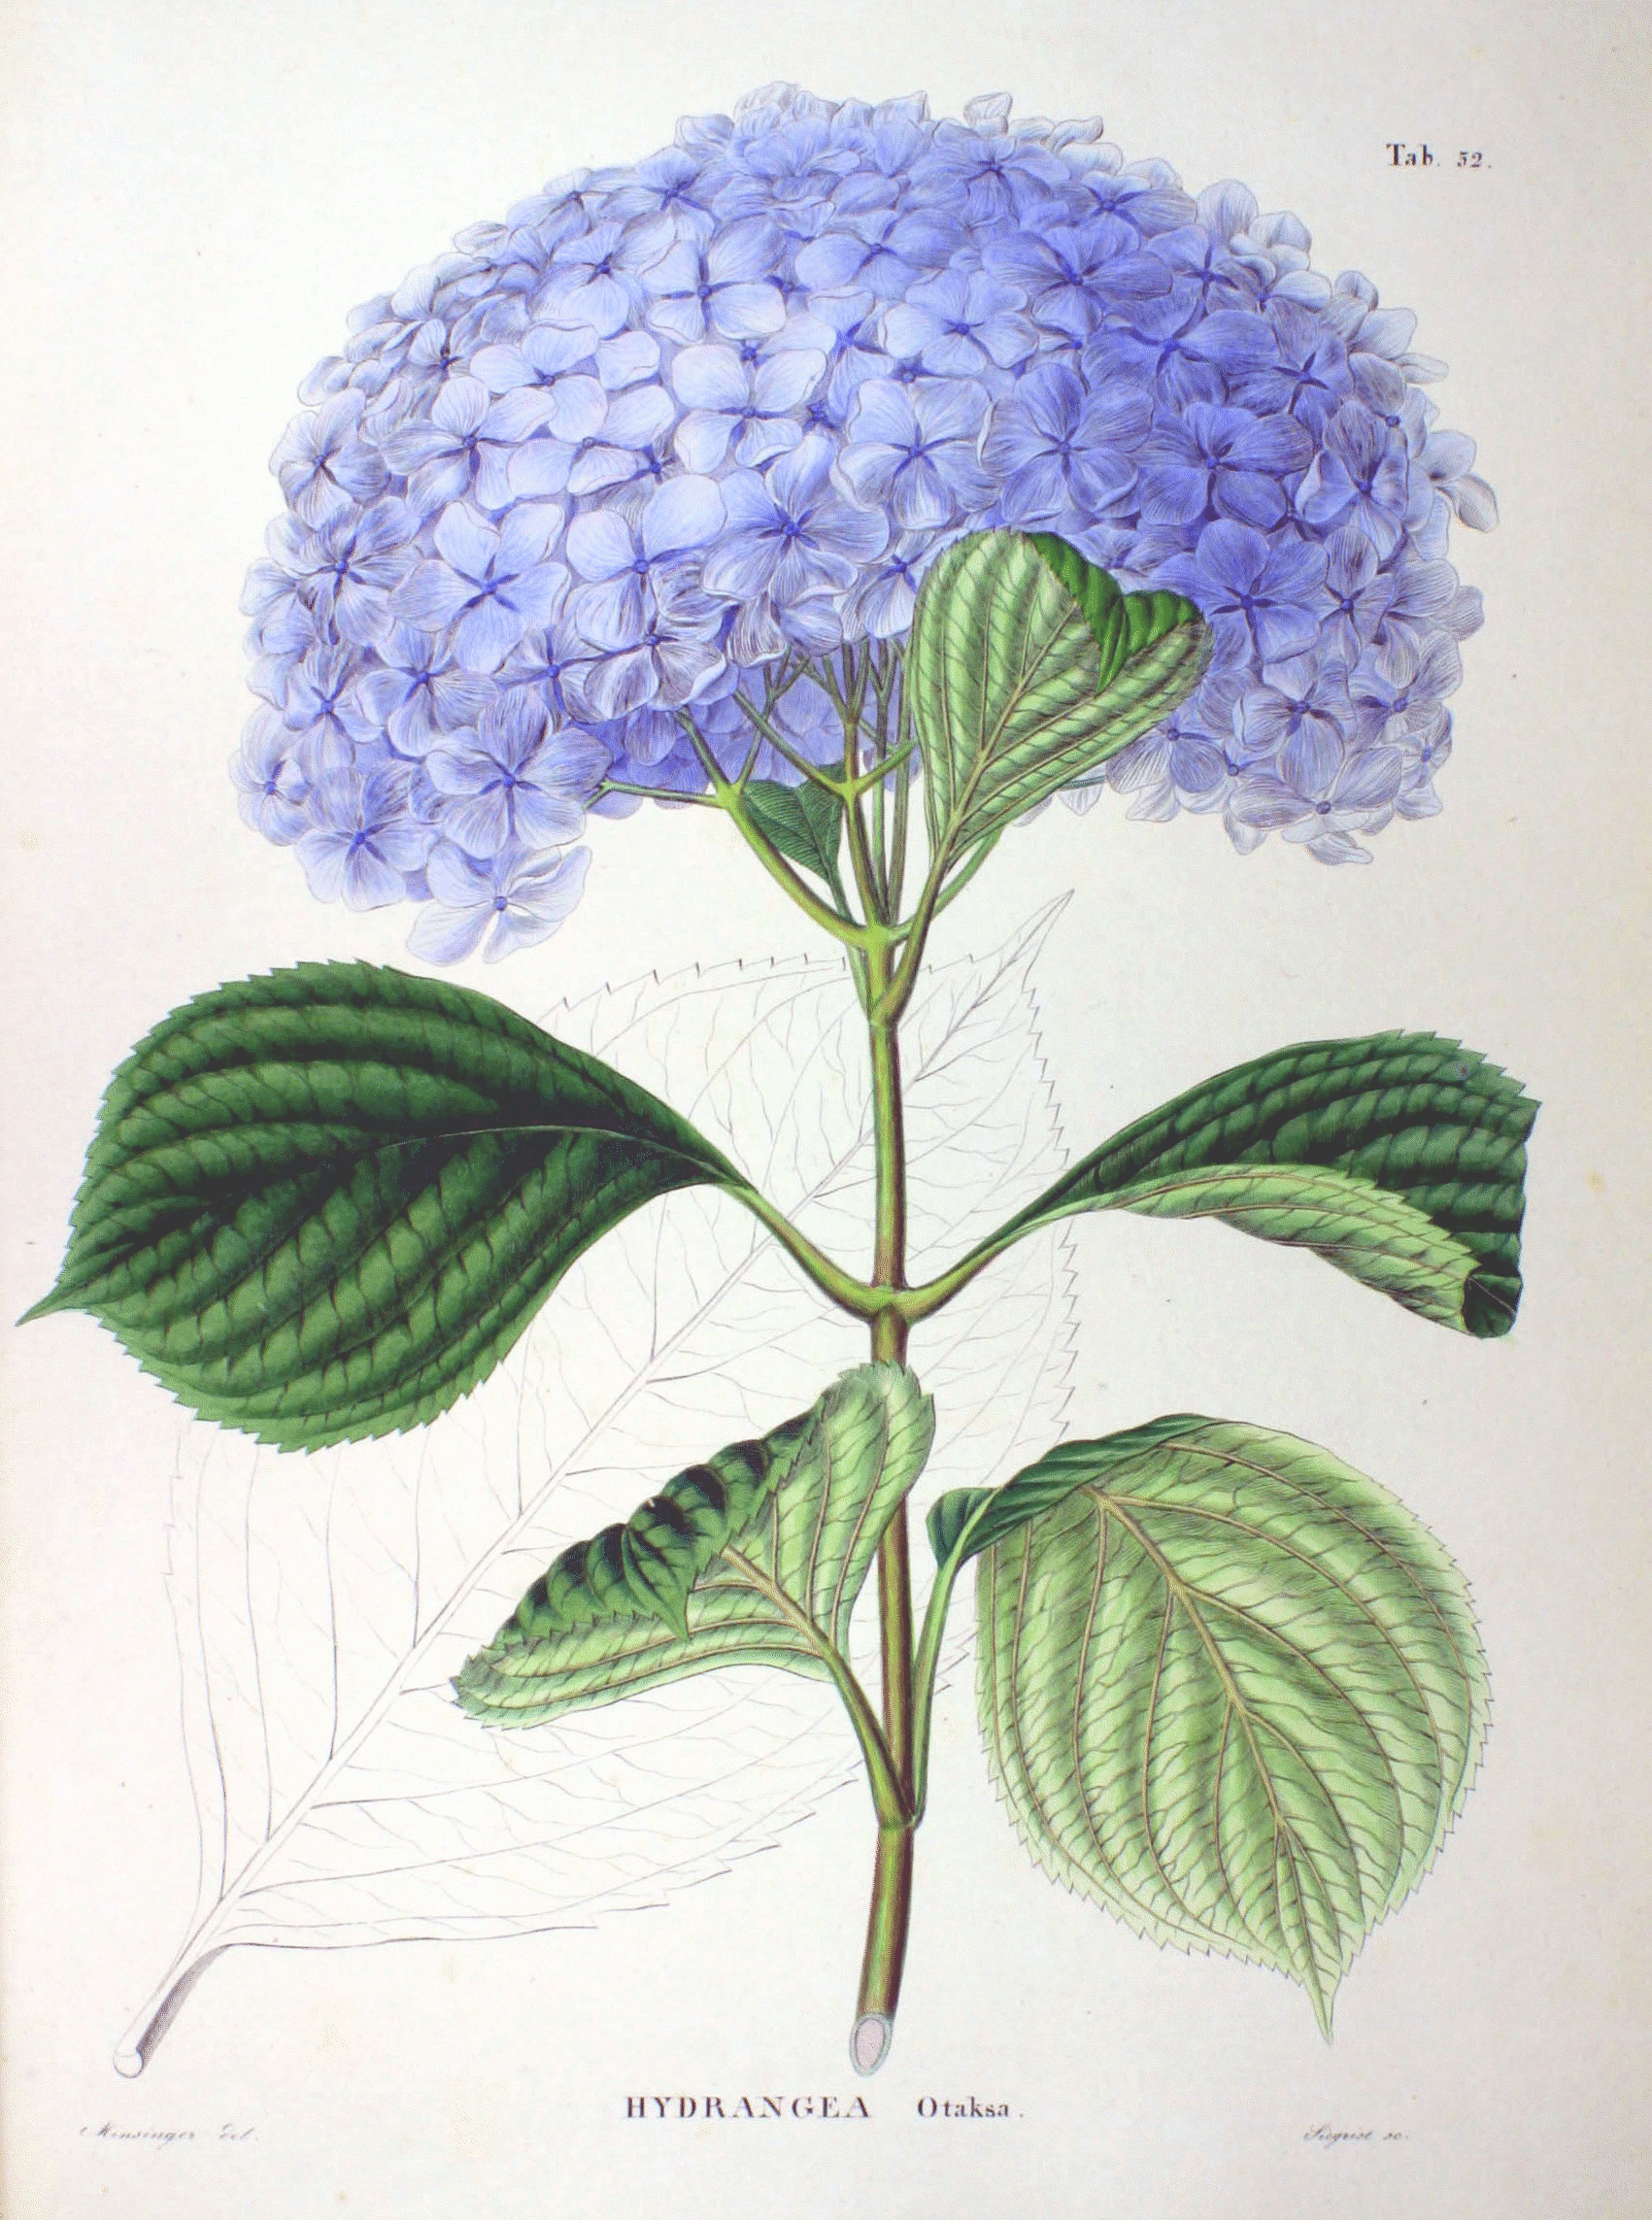 Hydrangea macrophylla - Wikipedia, la enciclopedia libre